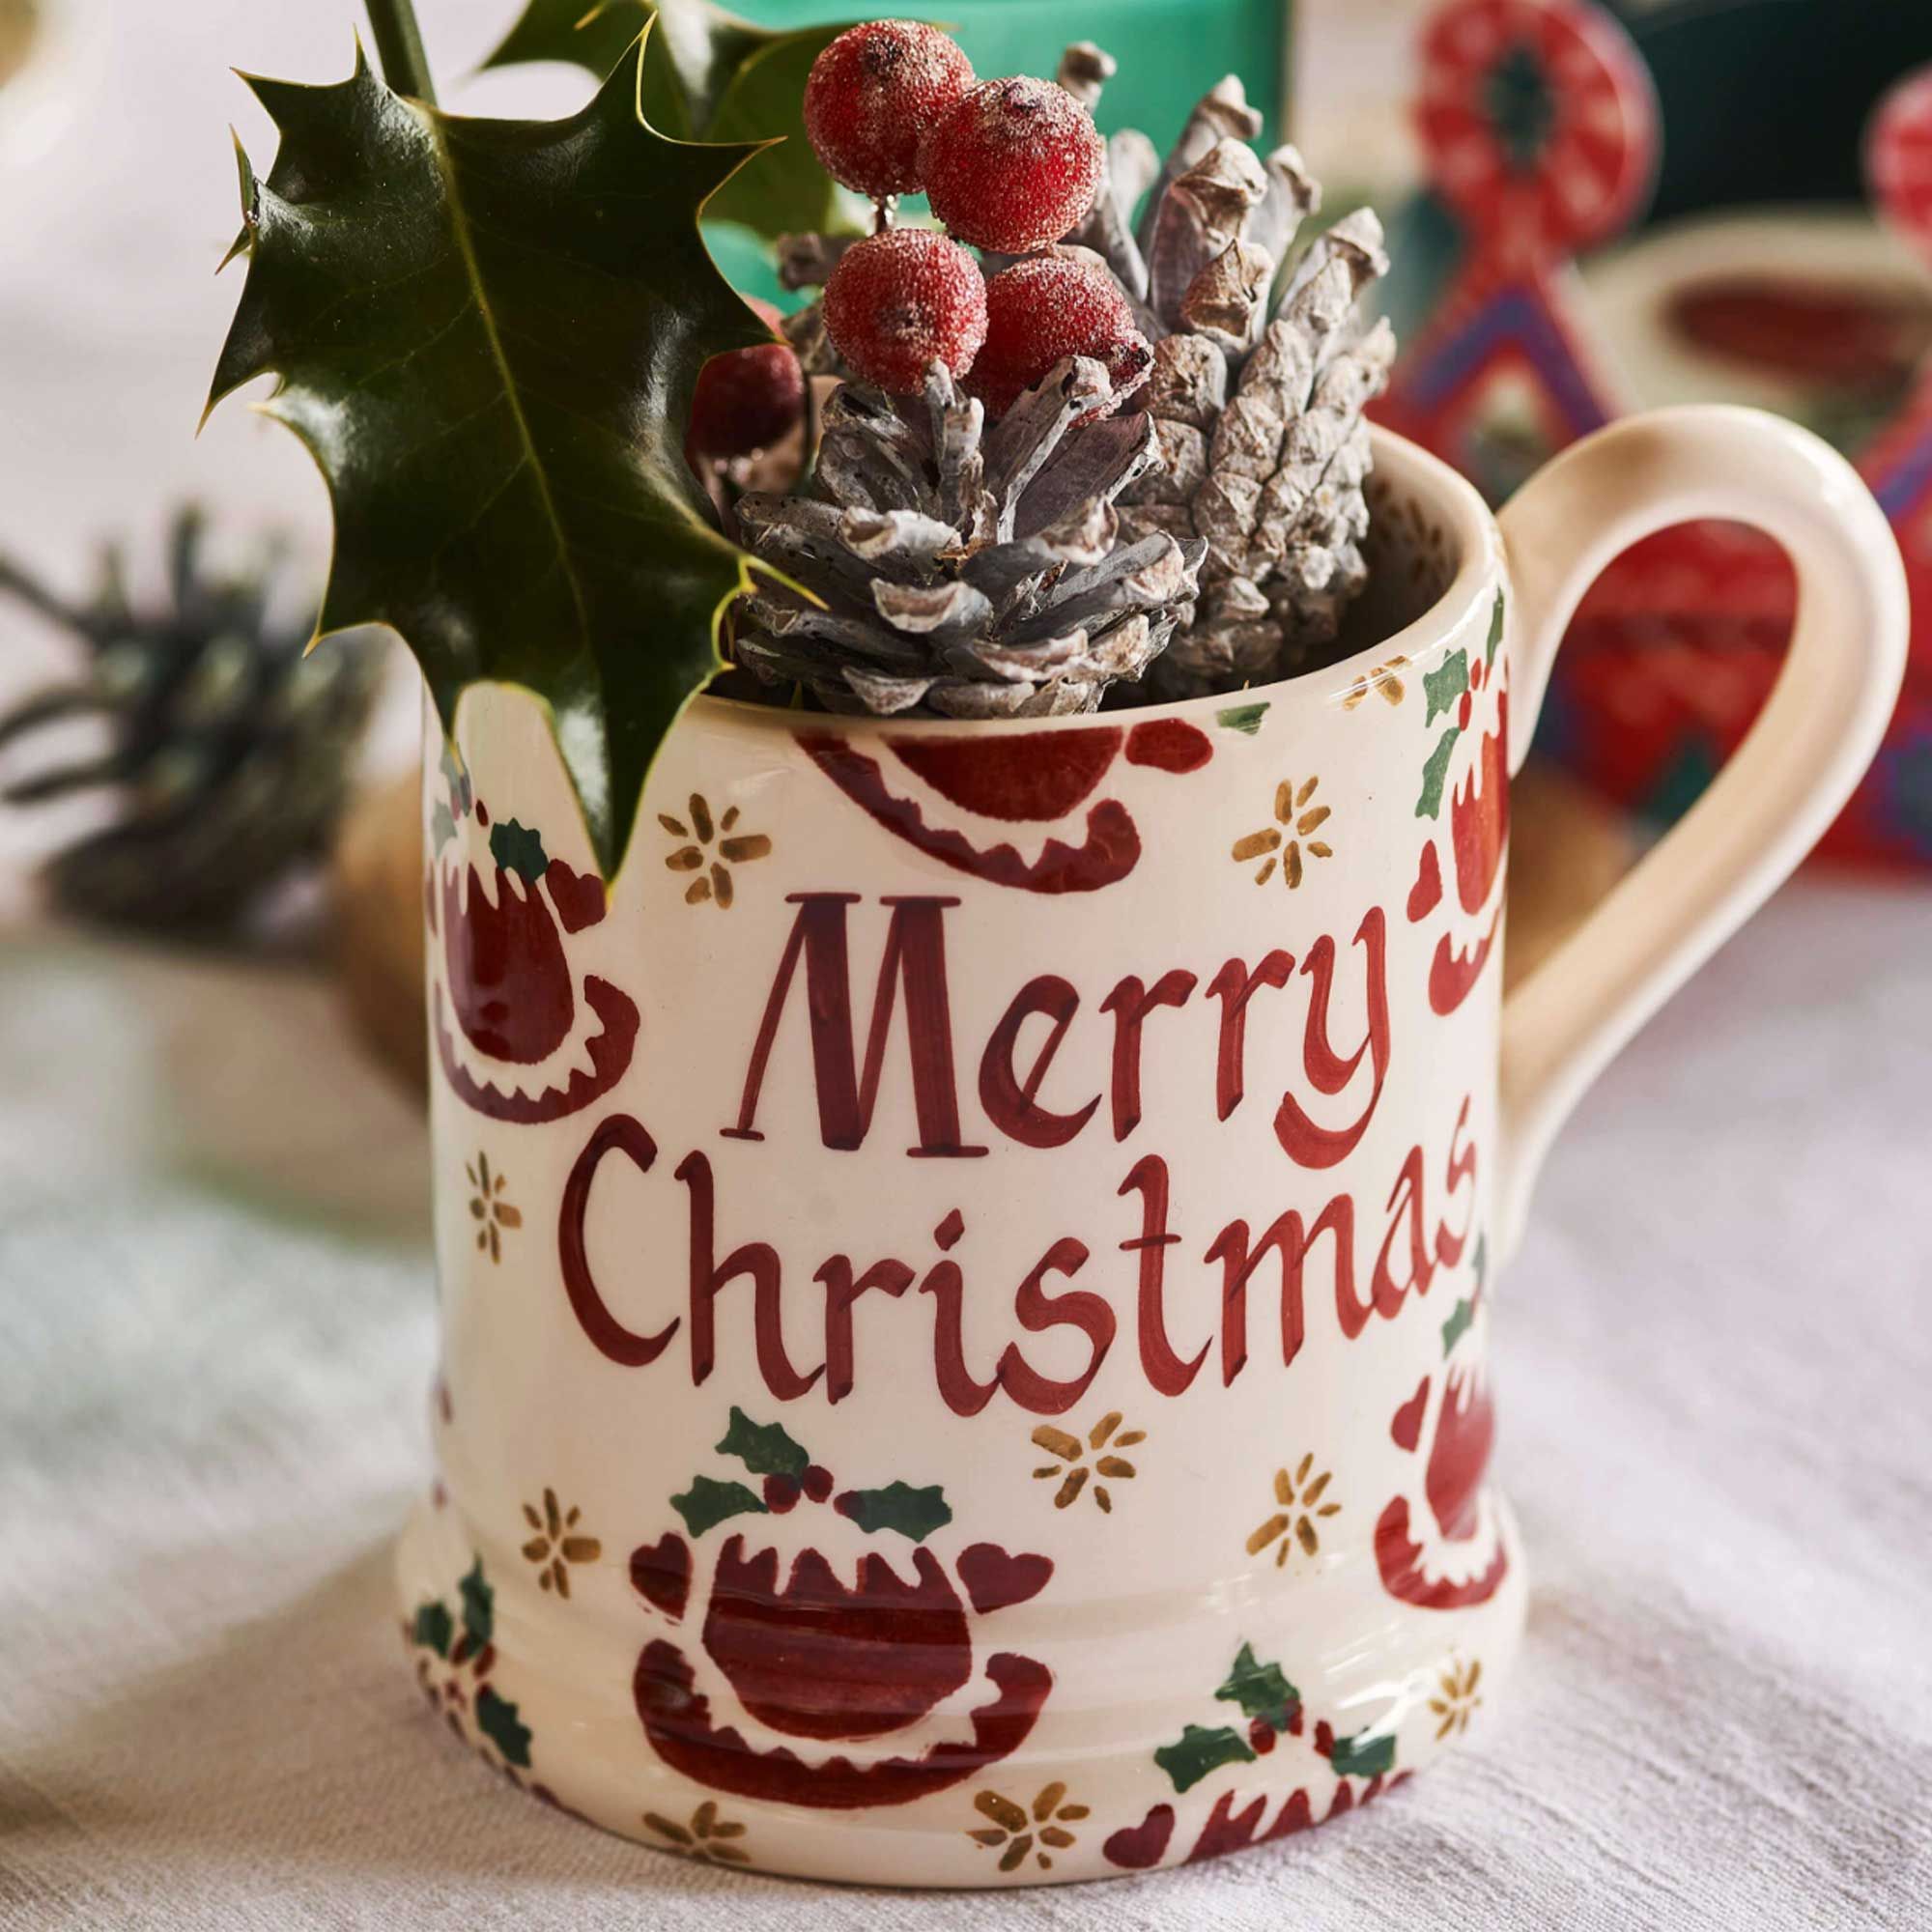 https://hips.hearstapps.com/hmg-prod/images/christmas-mugs-652028d80921a.jpg